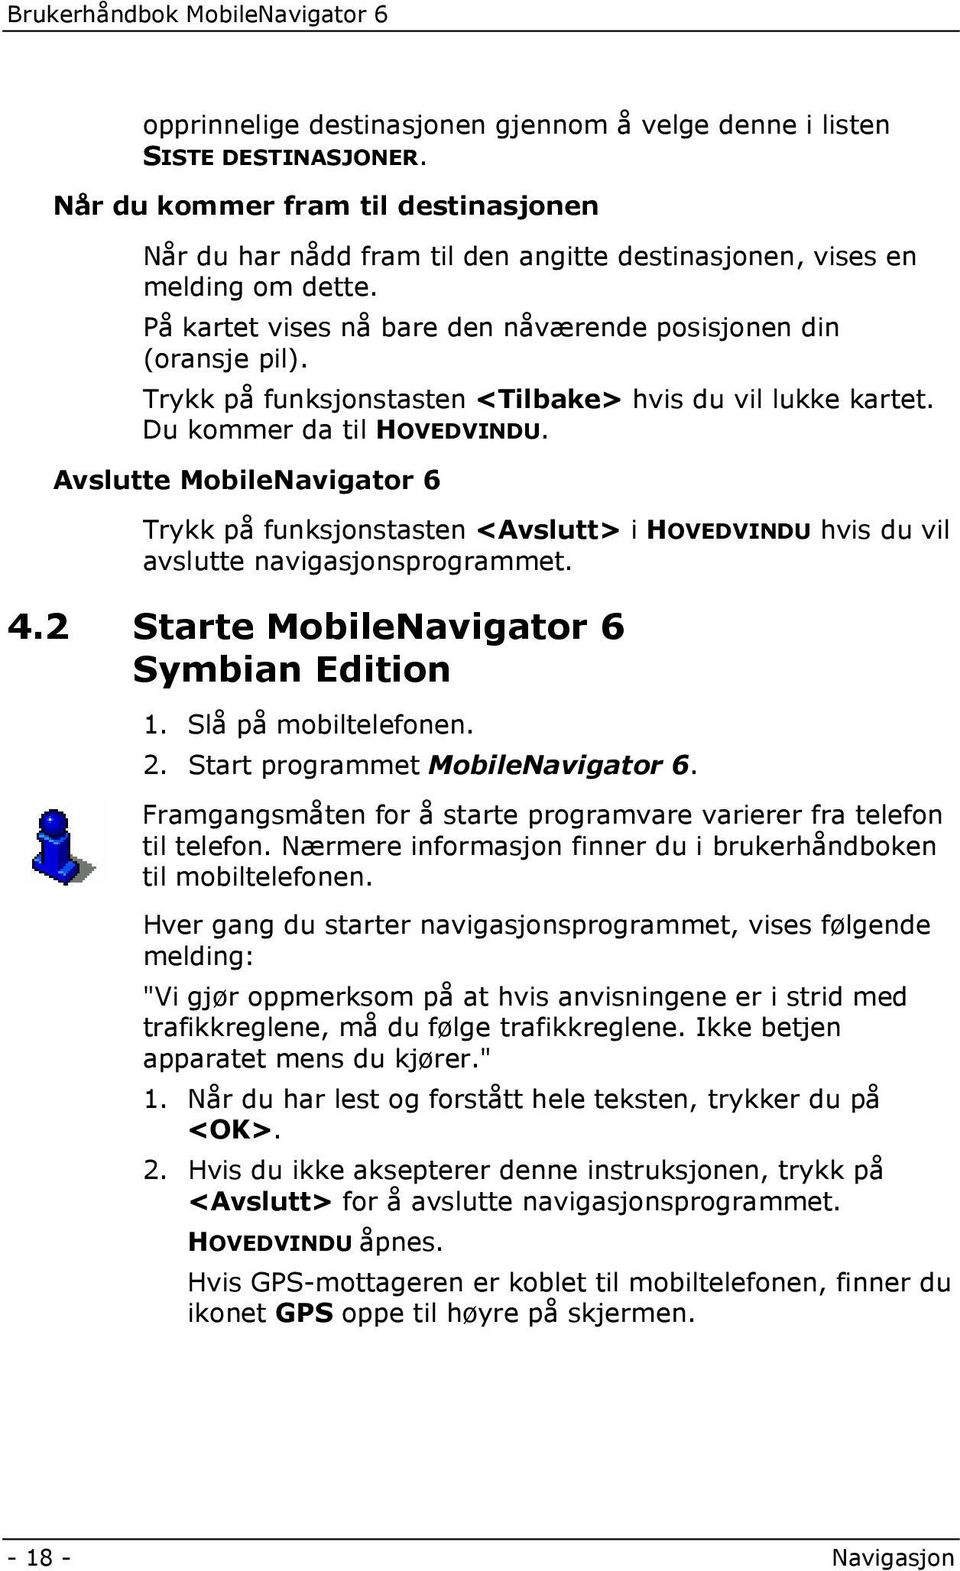 Avslutte MobileNavigator 6 Trykk på funksjonstasten <Avslutt> i HOVEDVINDU hvis du vil avslutte navigasjonsprogrammet. 4.2 Starte MobileNavigator 6 Symbian Edition 1. Slå på mobiltelefonen. 2.